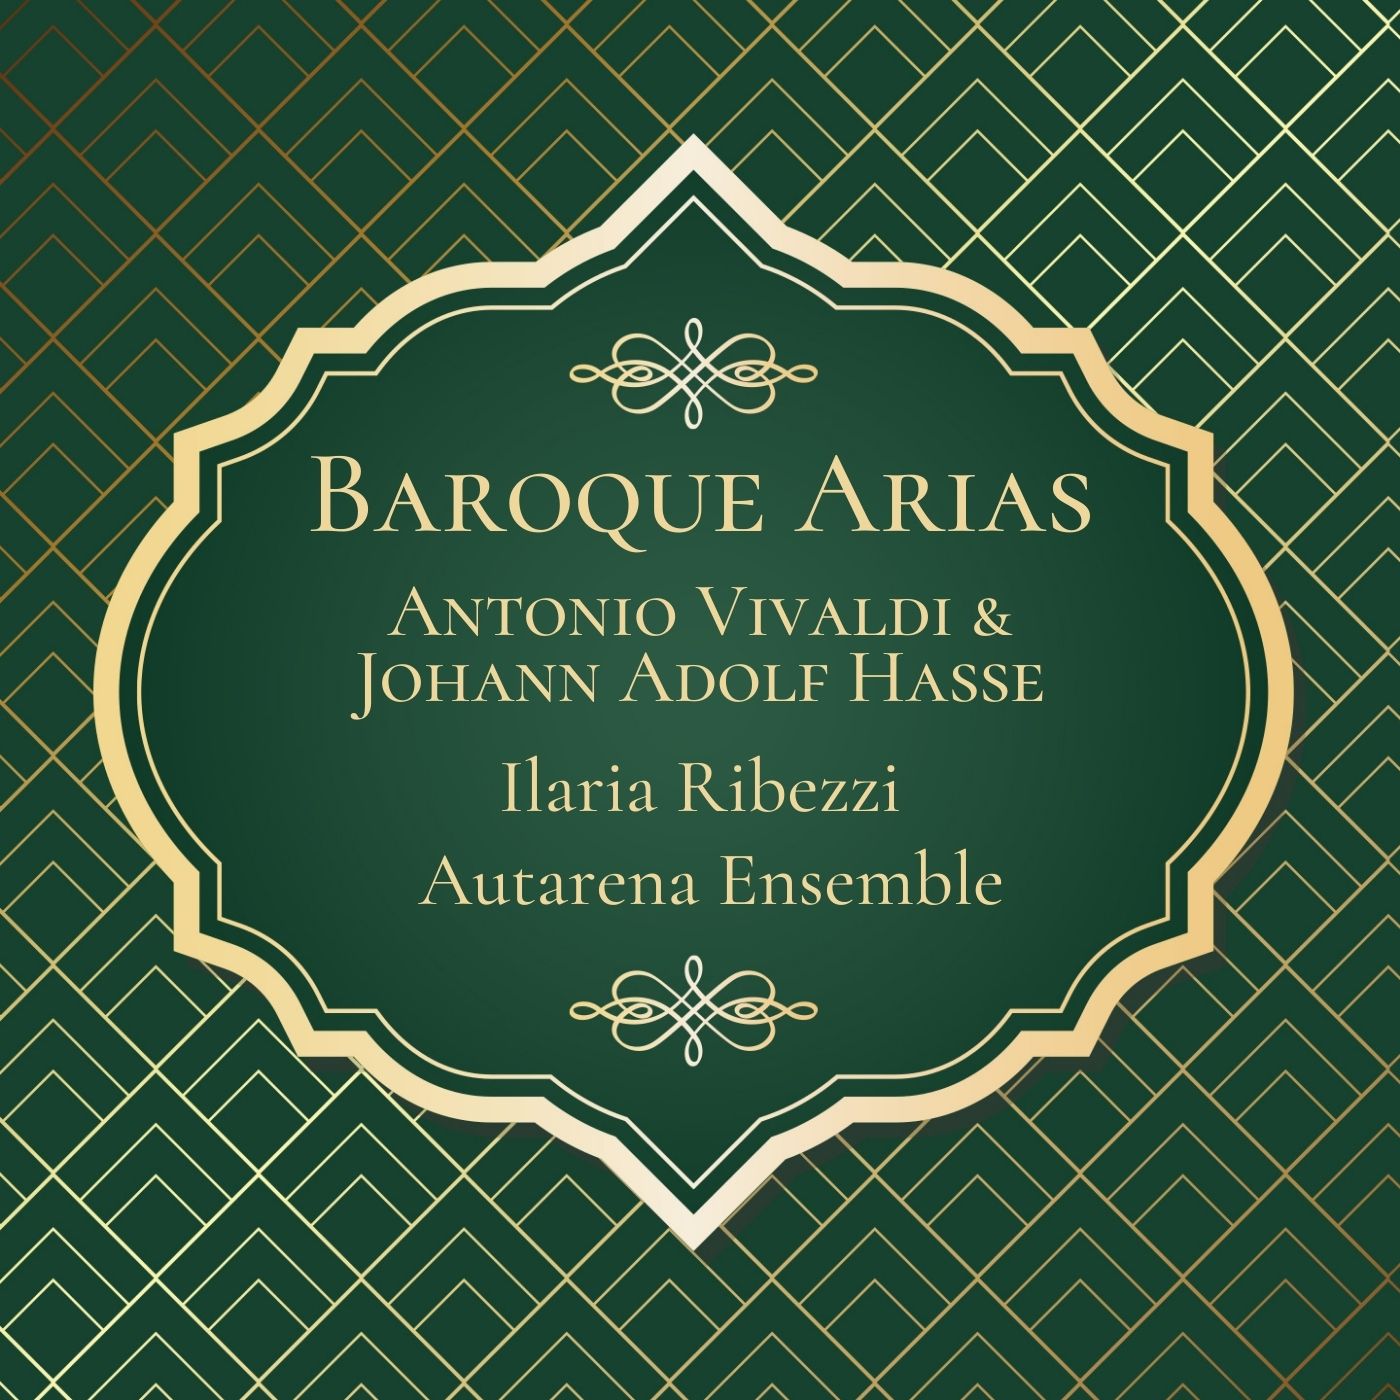 Baroque Arias: Antonio Vivaldi & Johann Adolf Hasse